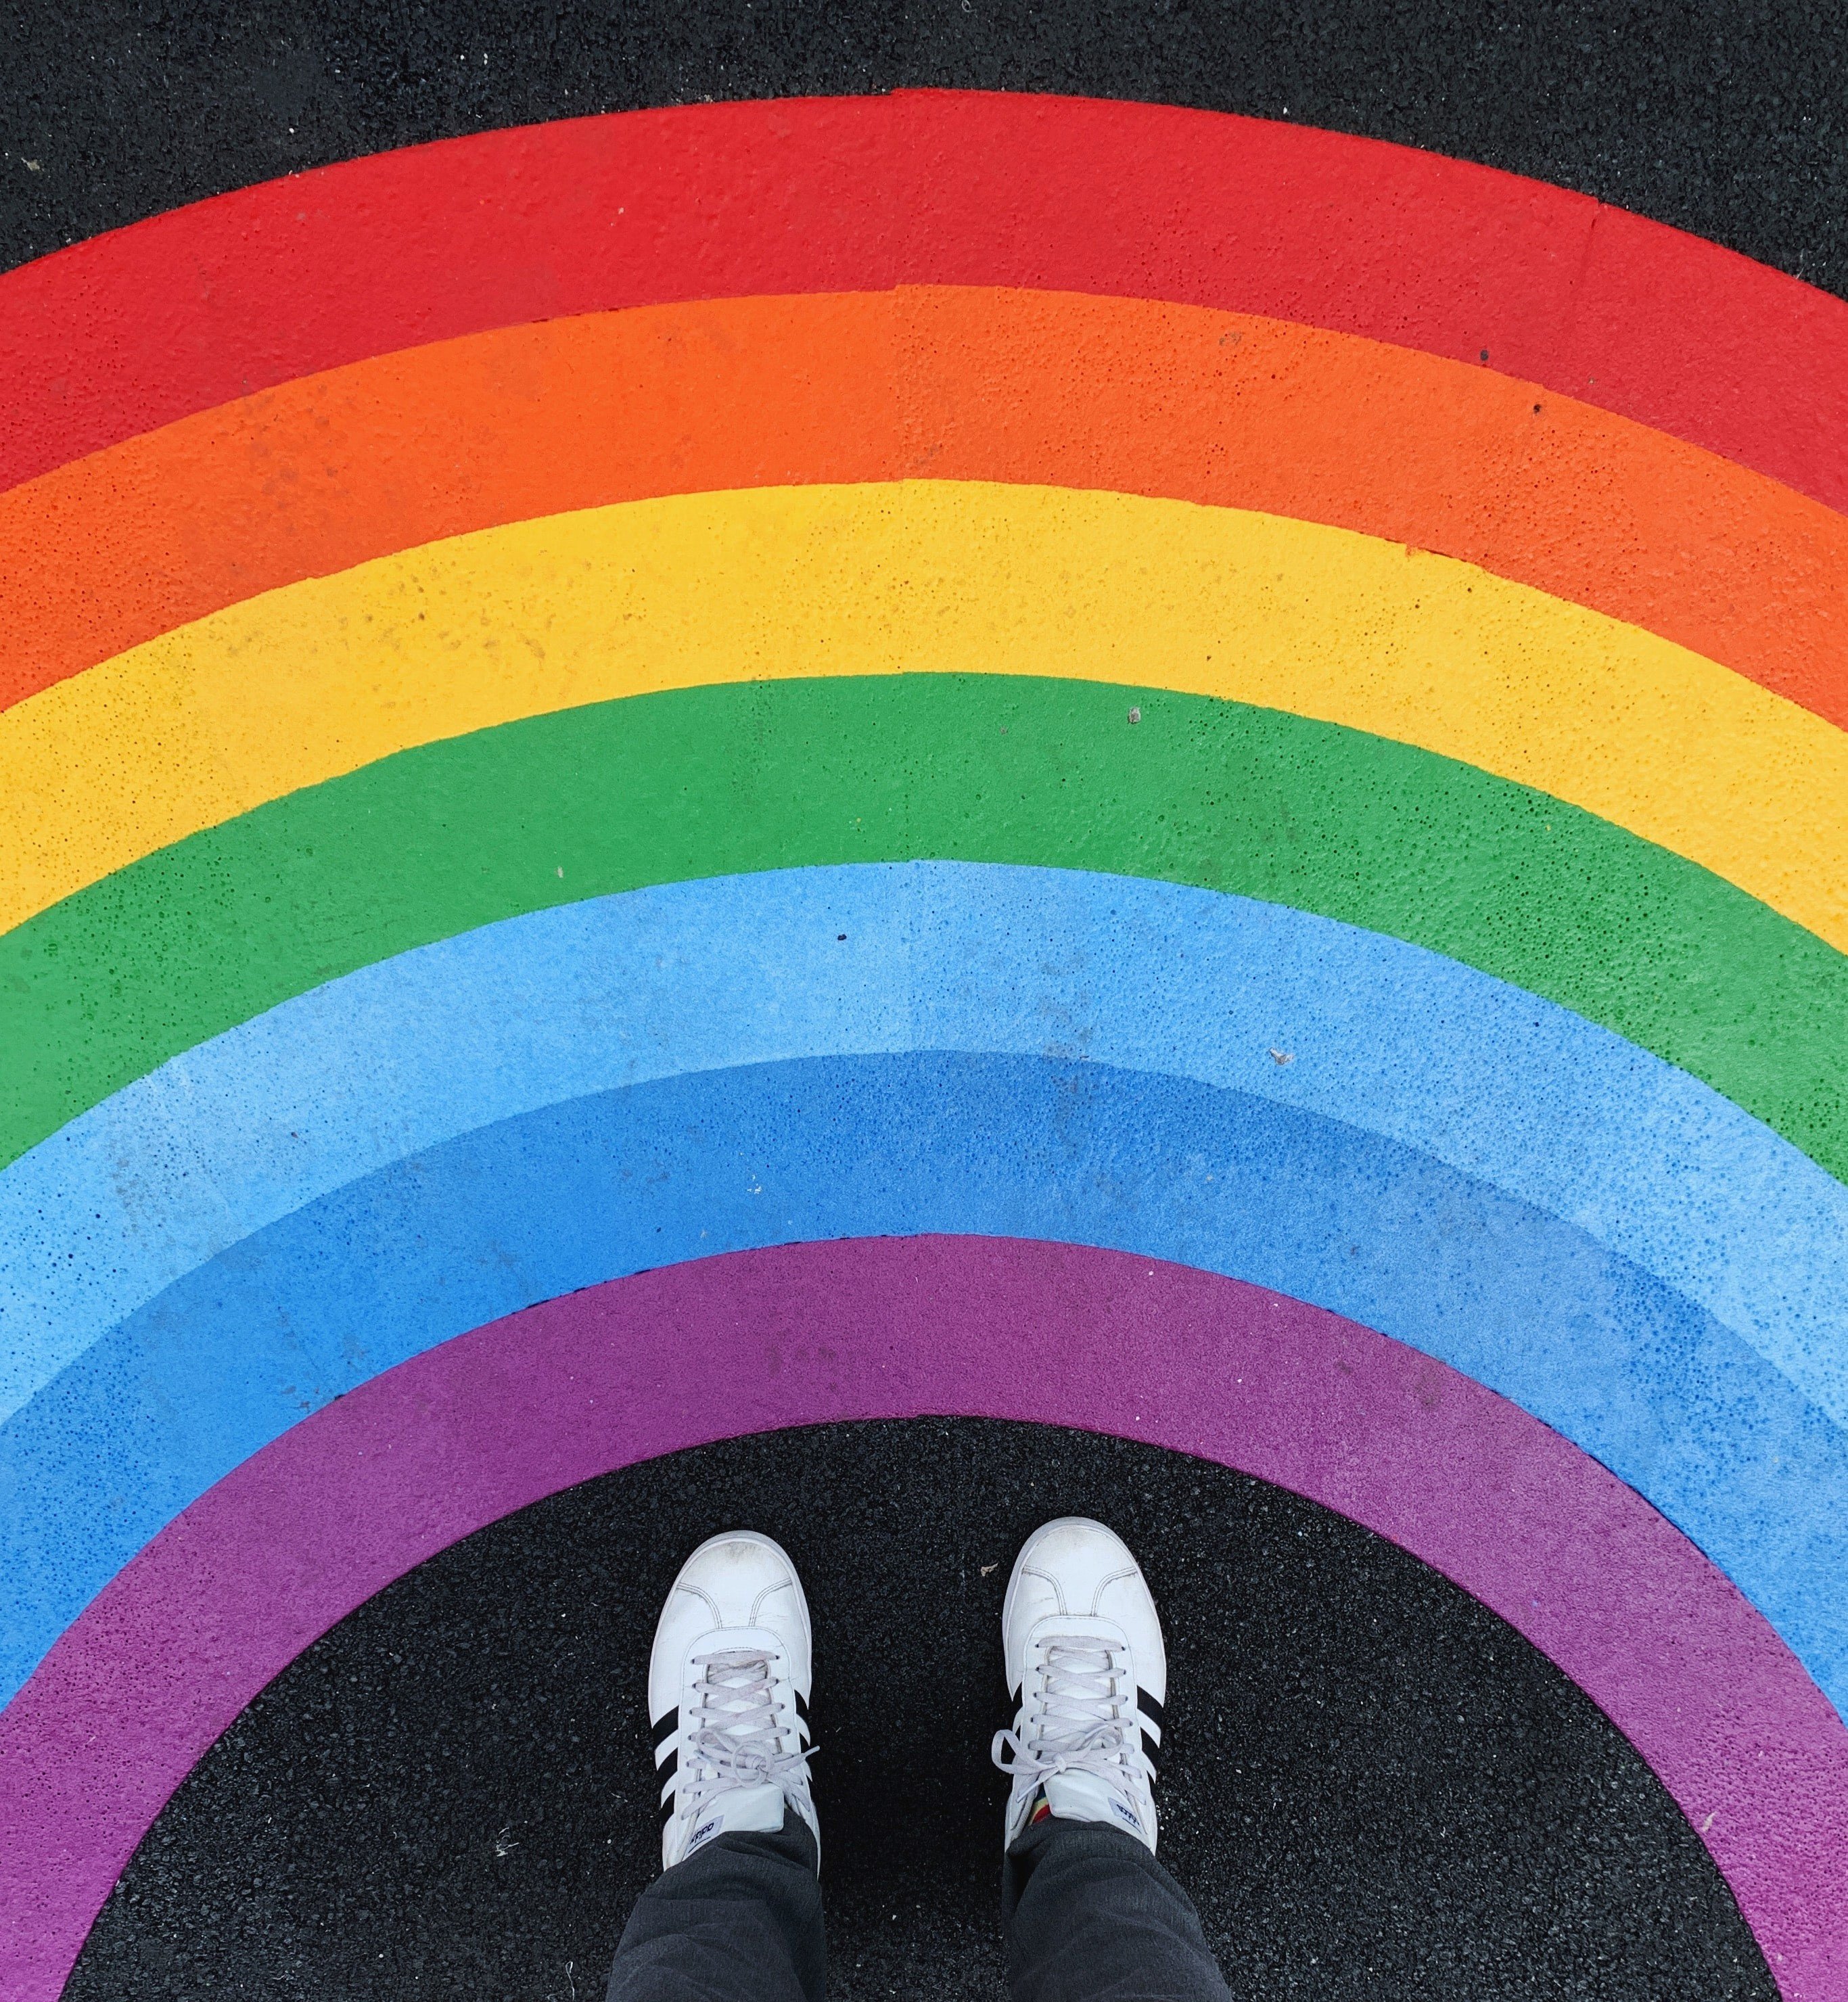 Orgullo 2021: fiestas y celebraciones para reivindicar los derechos LGTBIQ+